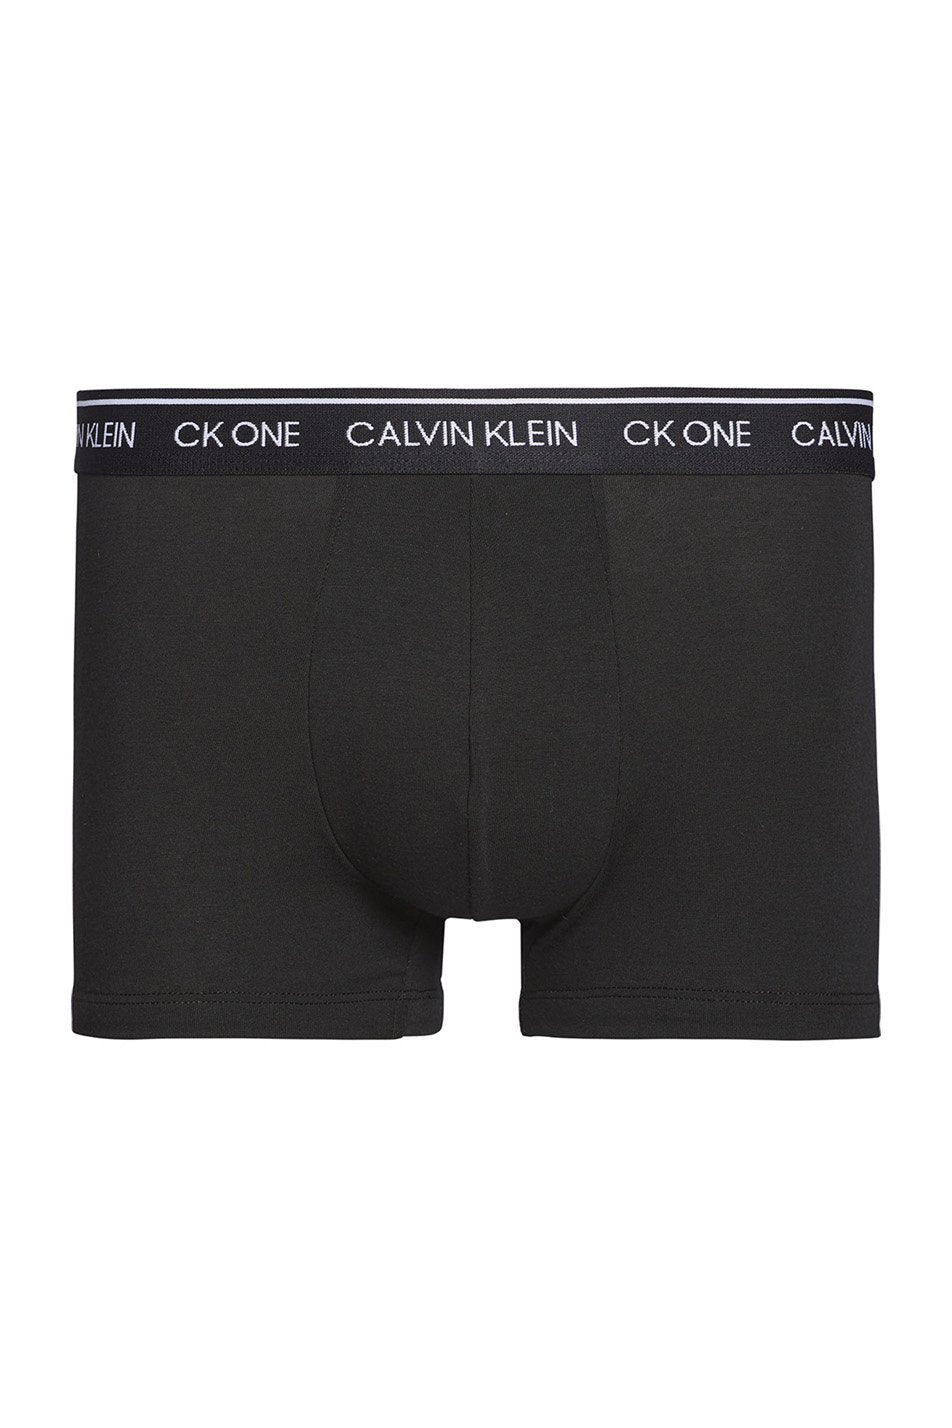 Calvin Klein Men's Modern Cotton Stretch Trunks